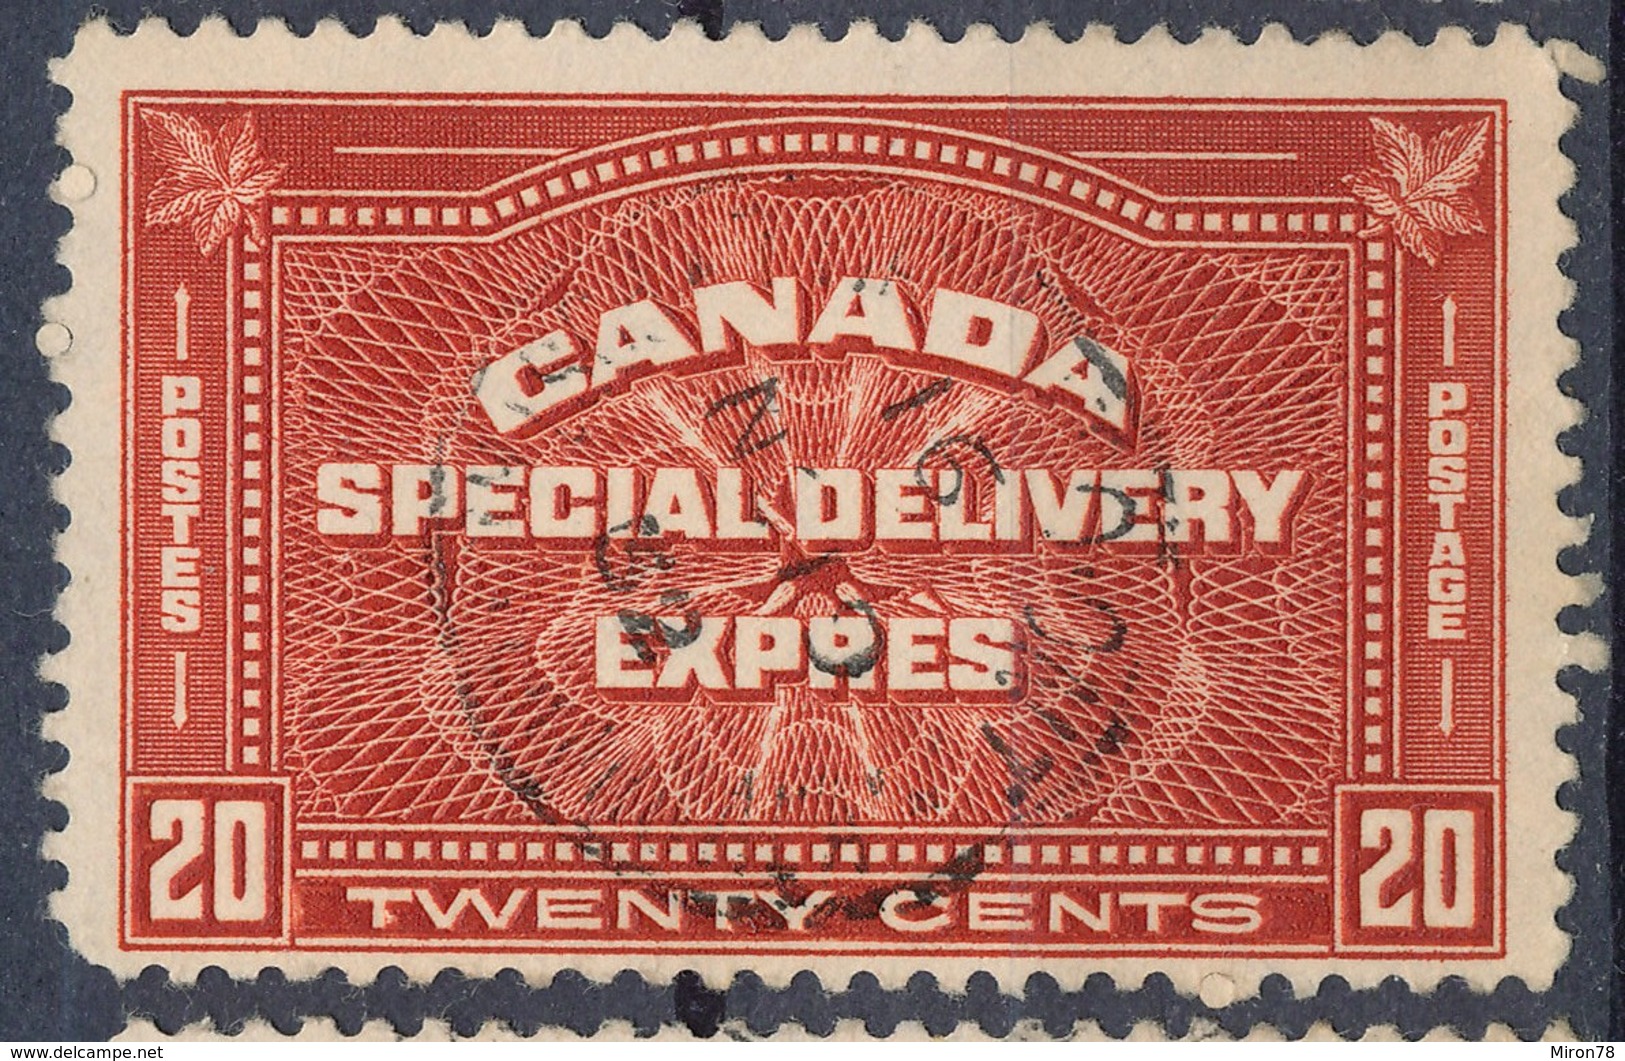 Stamp Canada  1930 20c Used - Correo Urgente